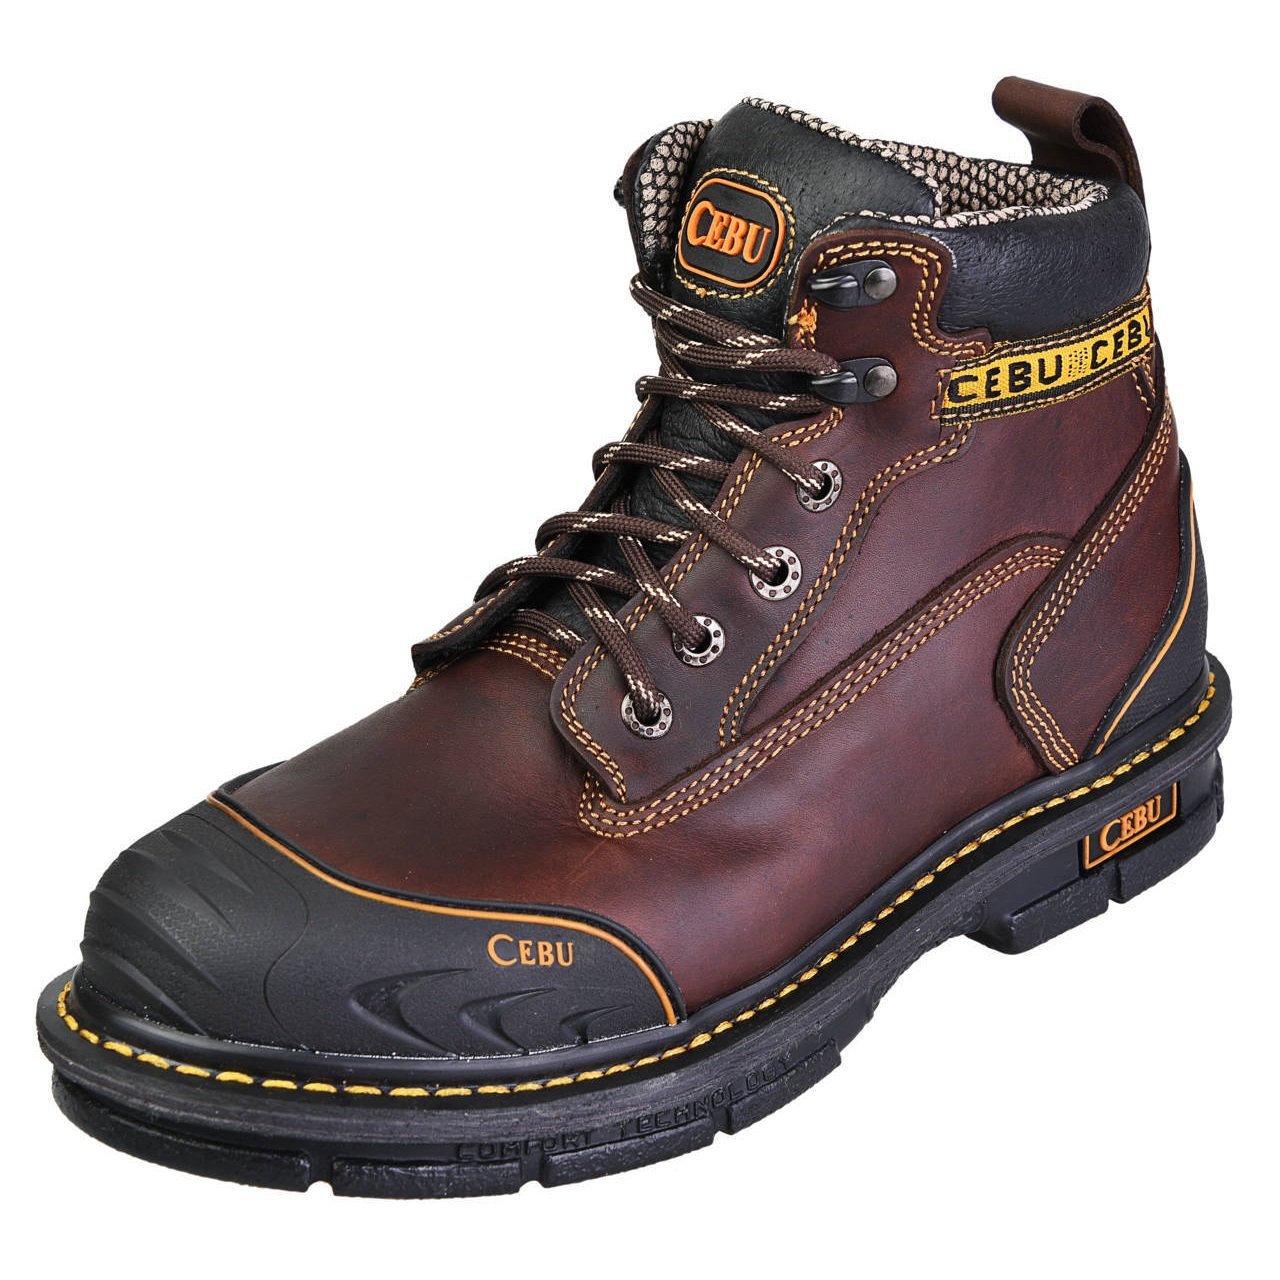 Men's Work Boots - Steel Toe & Rubber Shield - Brown Work Boots - Cebu - 6" Work Boots - Brown 6in Work Boots